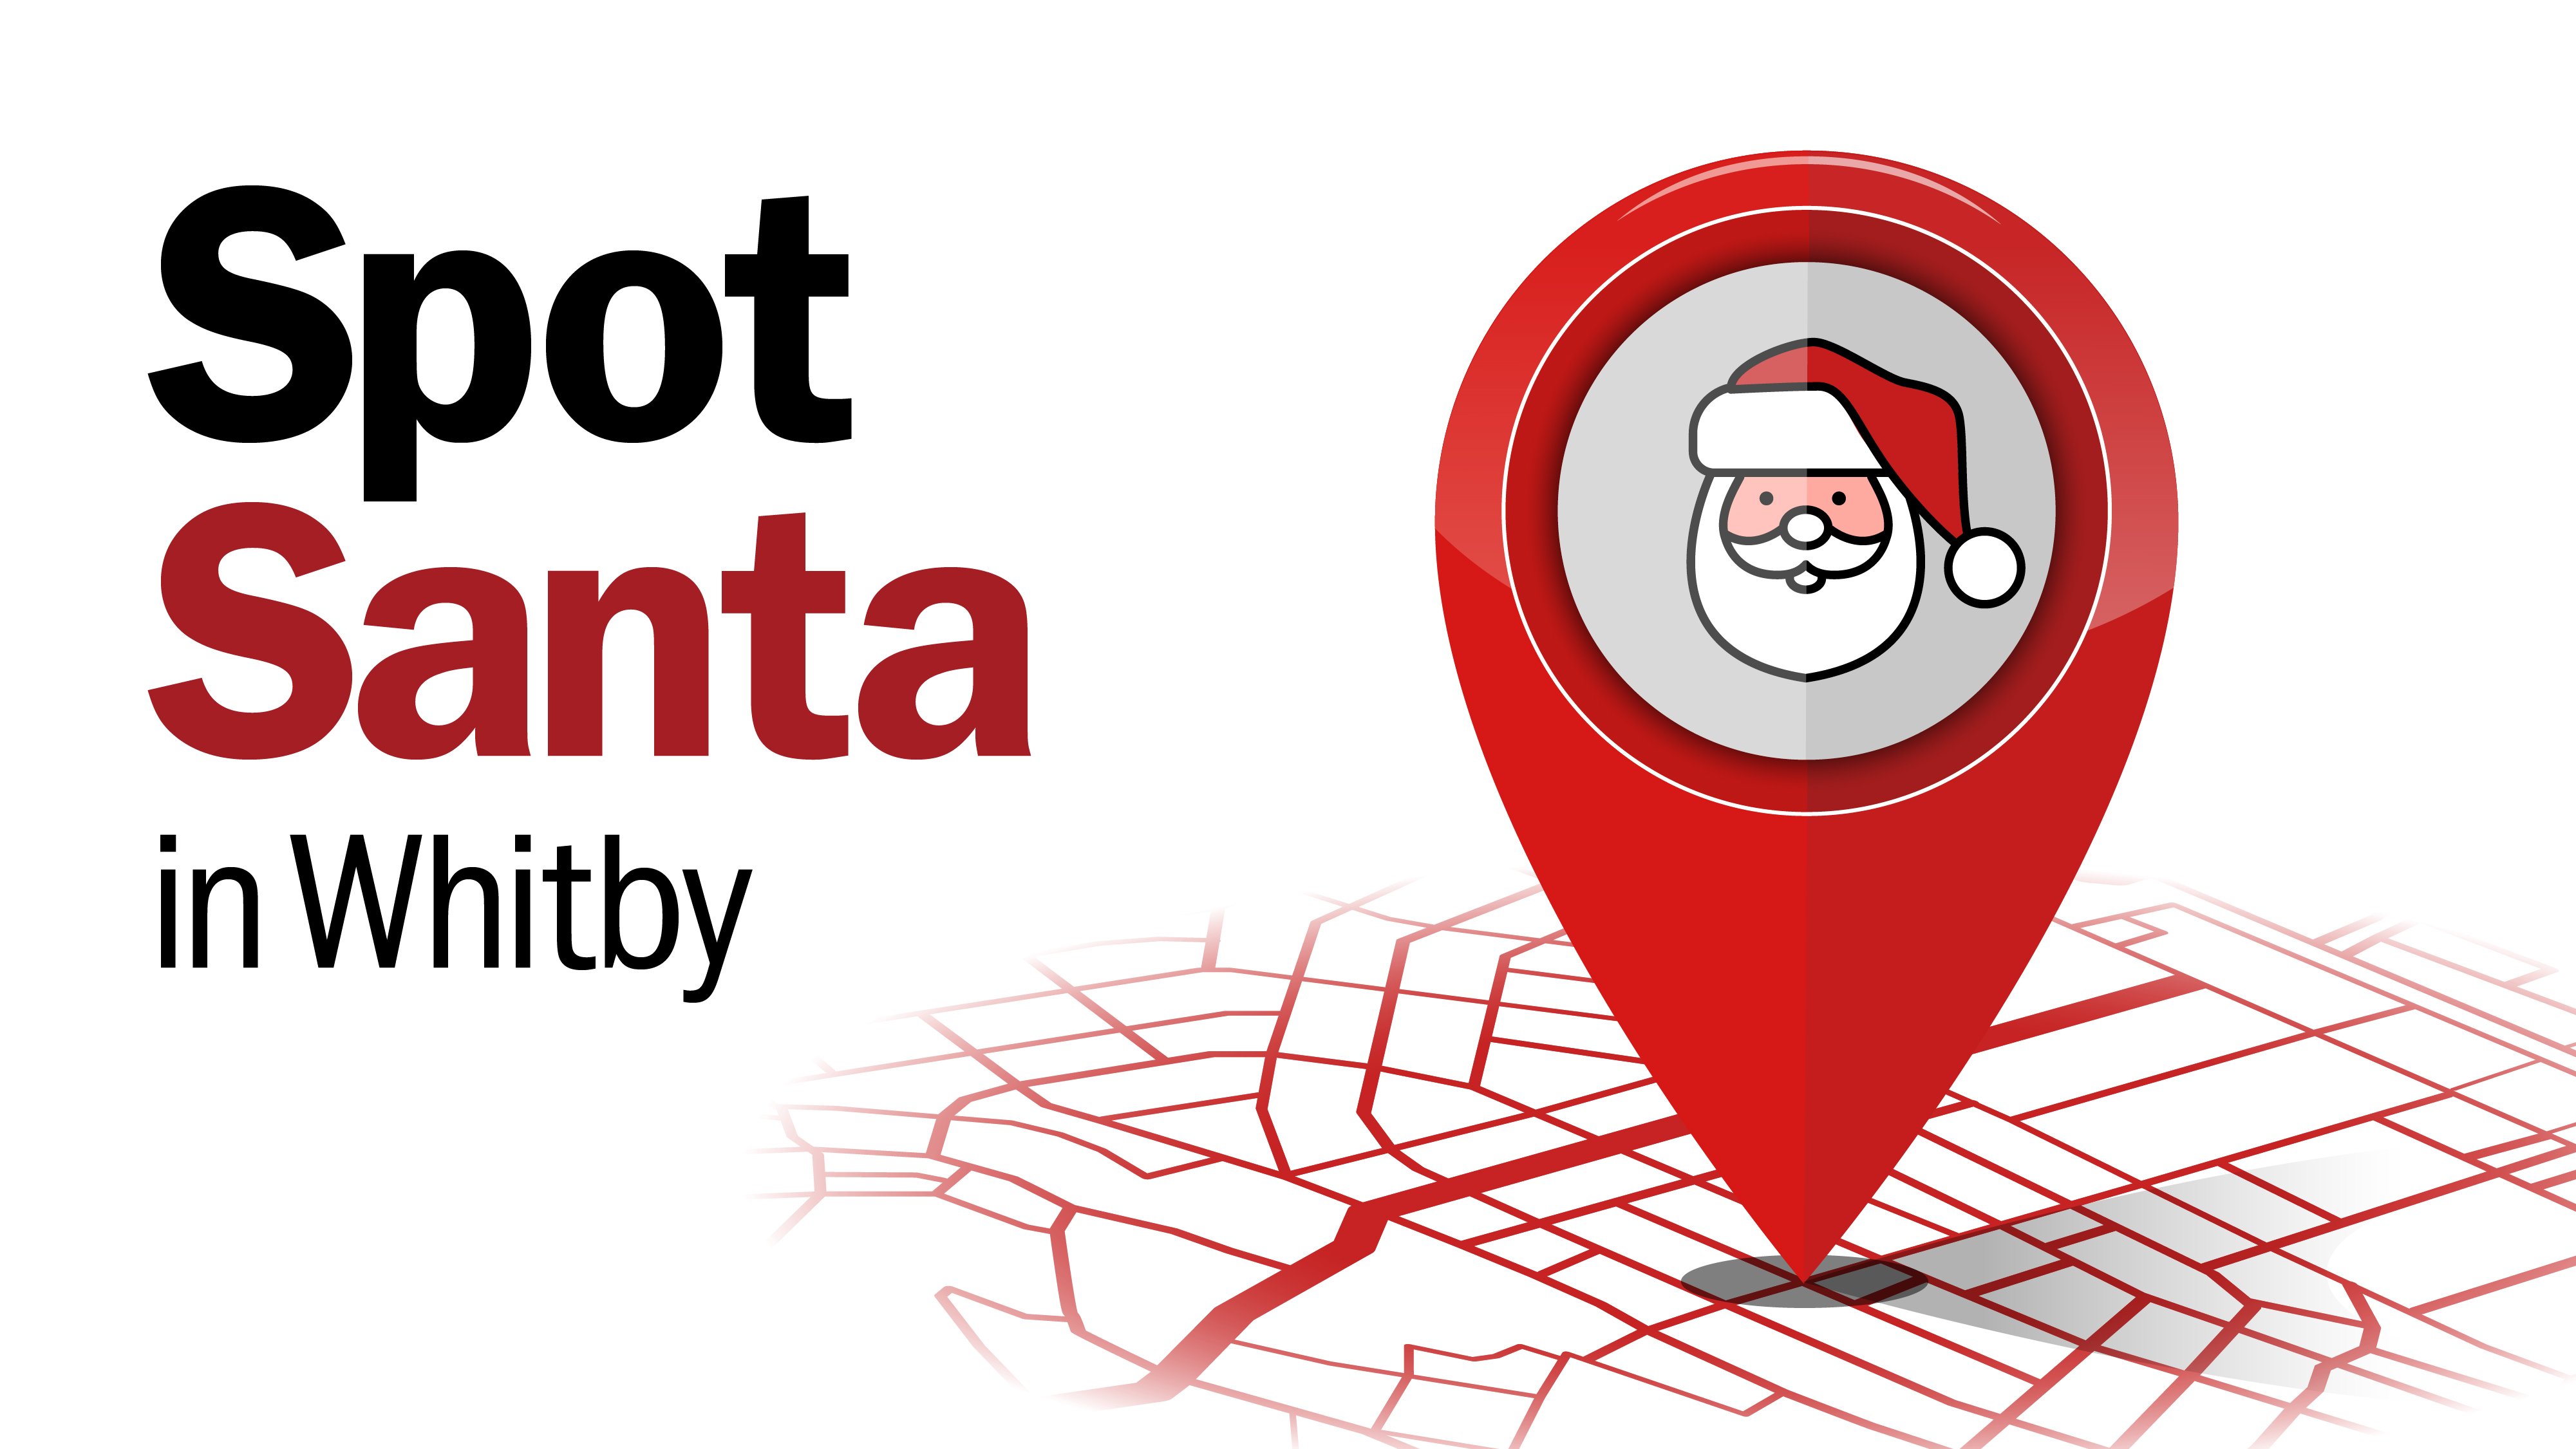 Spot Santa in Whitby